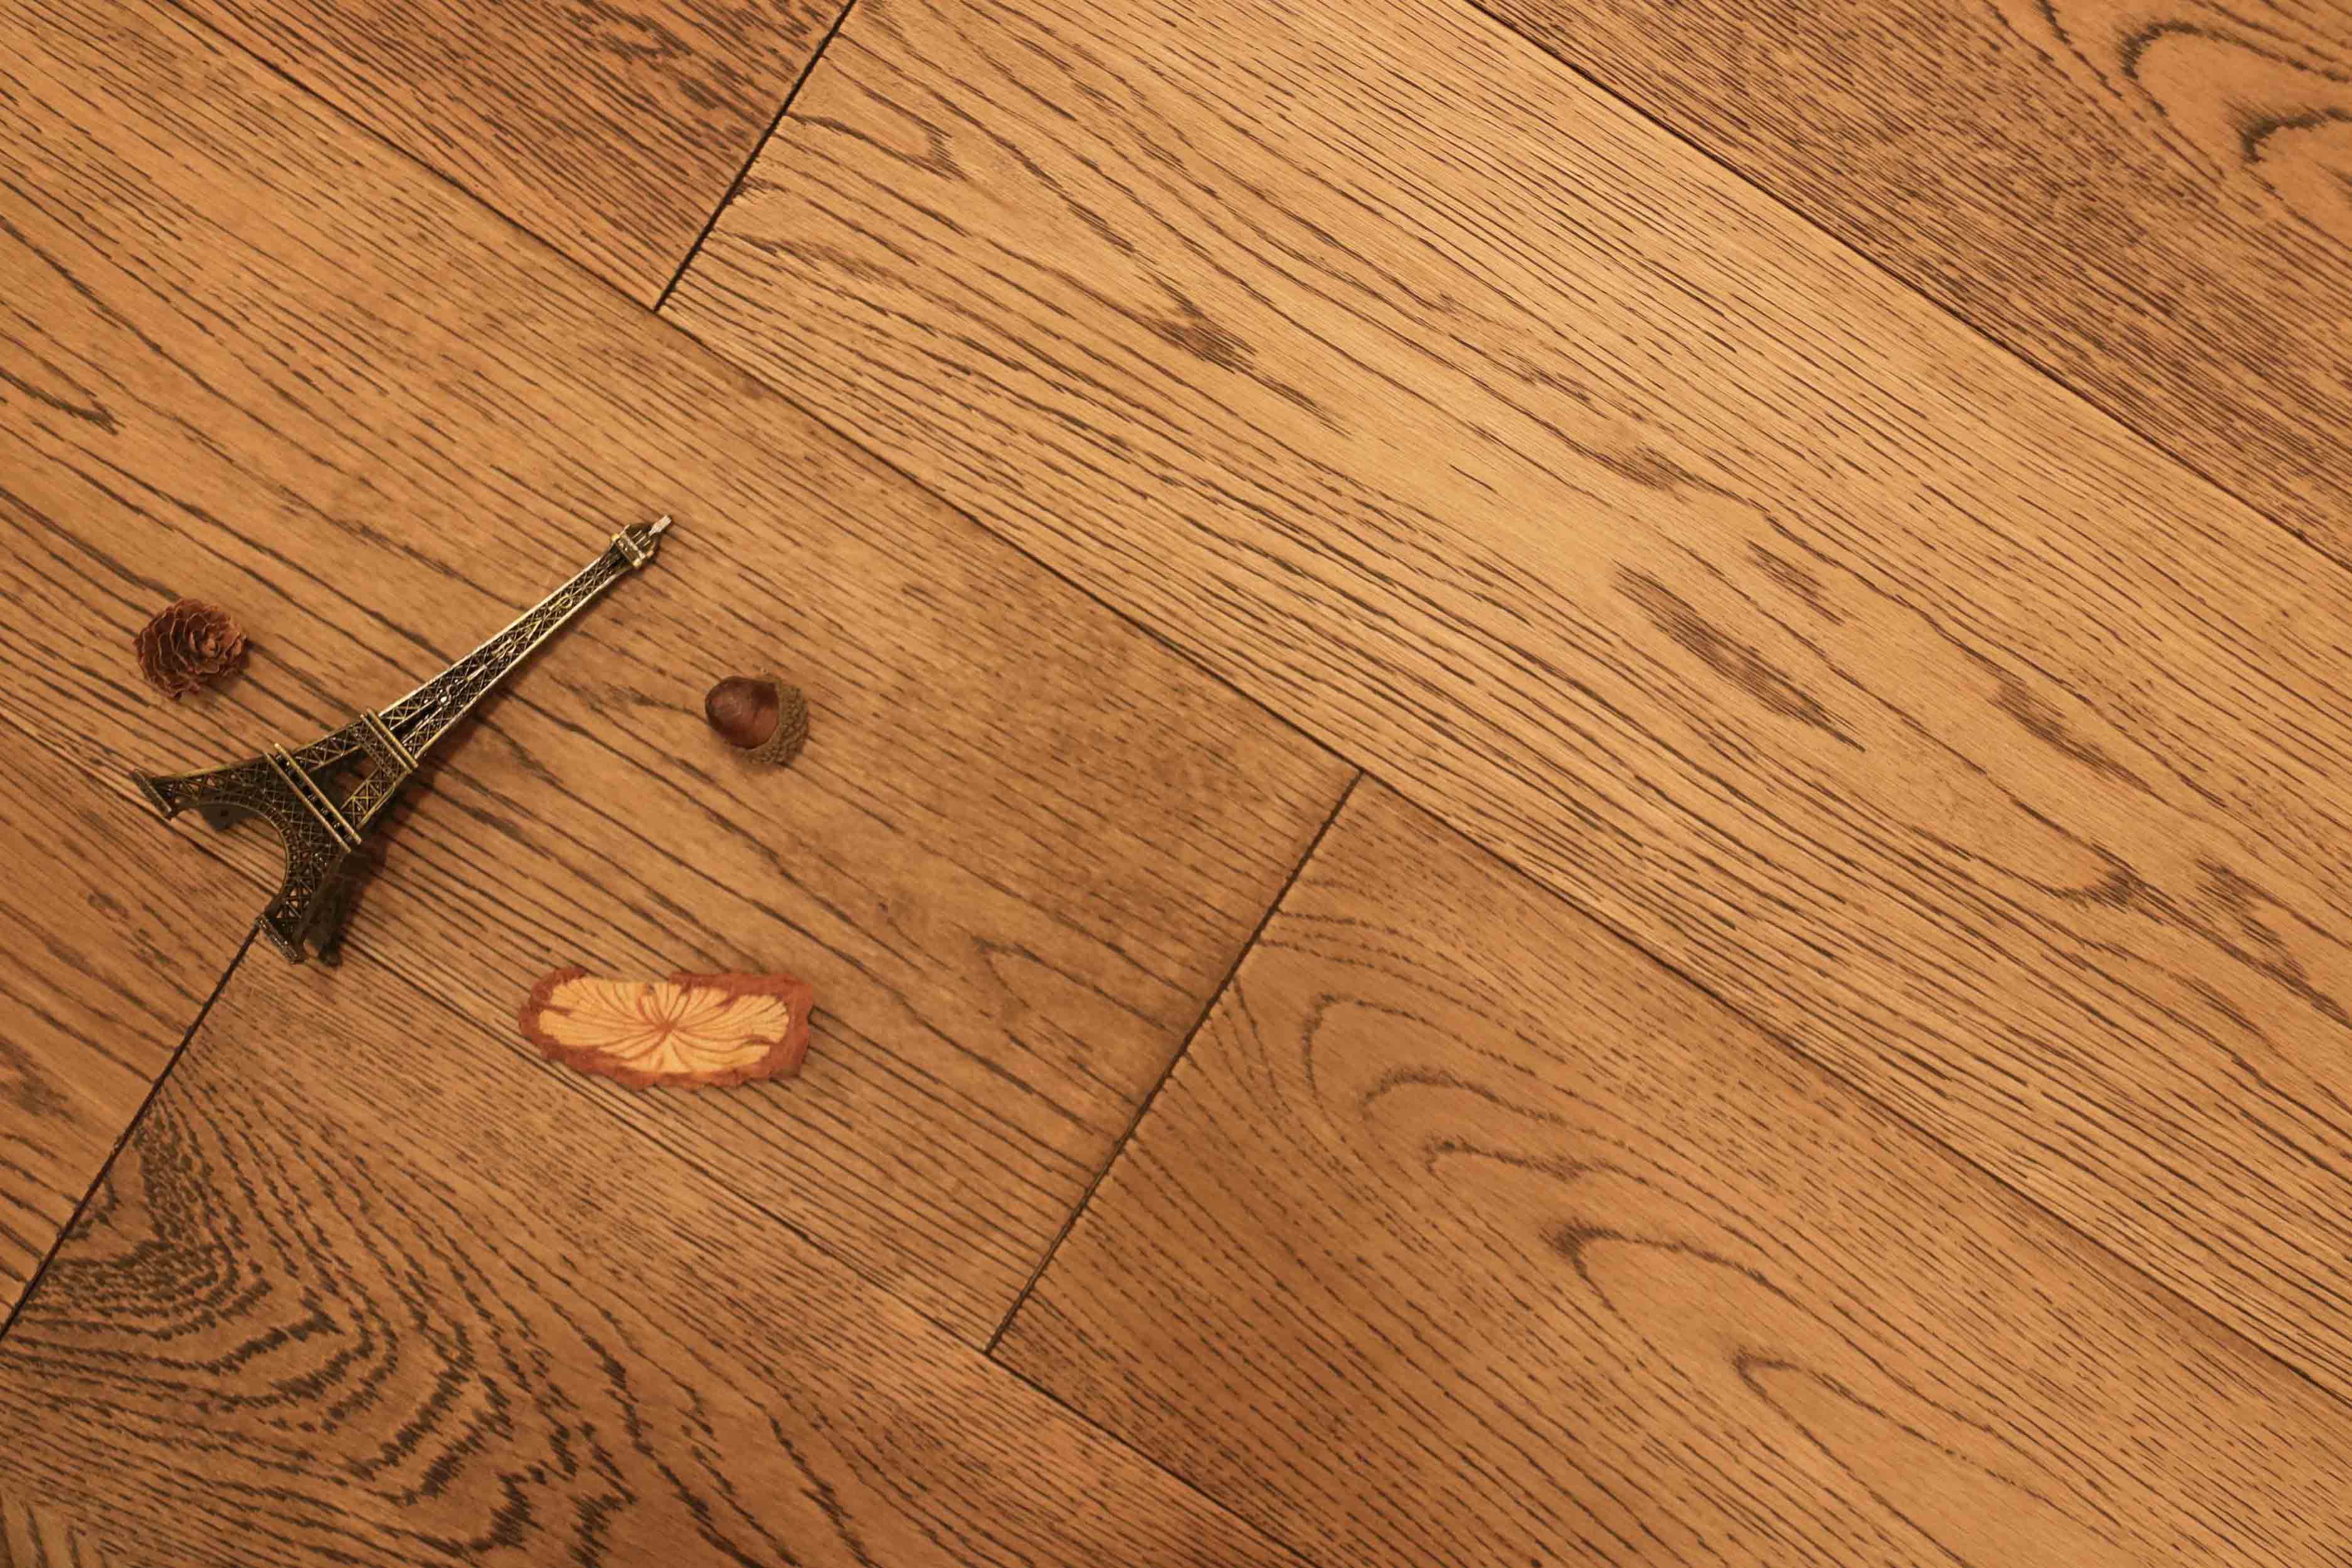 橡木 木蜡油 本色 三层 多层实木复合地板 锁扣地暖 地板厂家-阿里巴巴